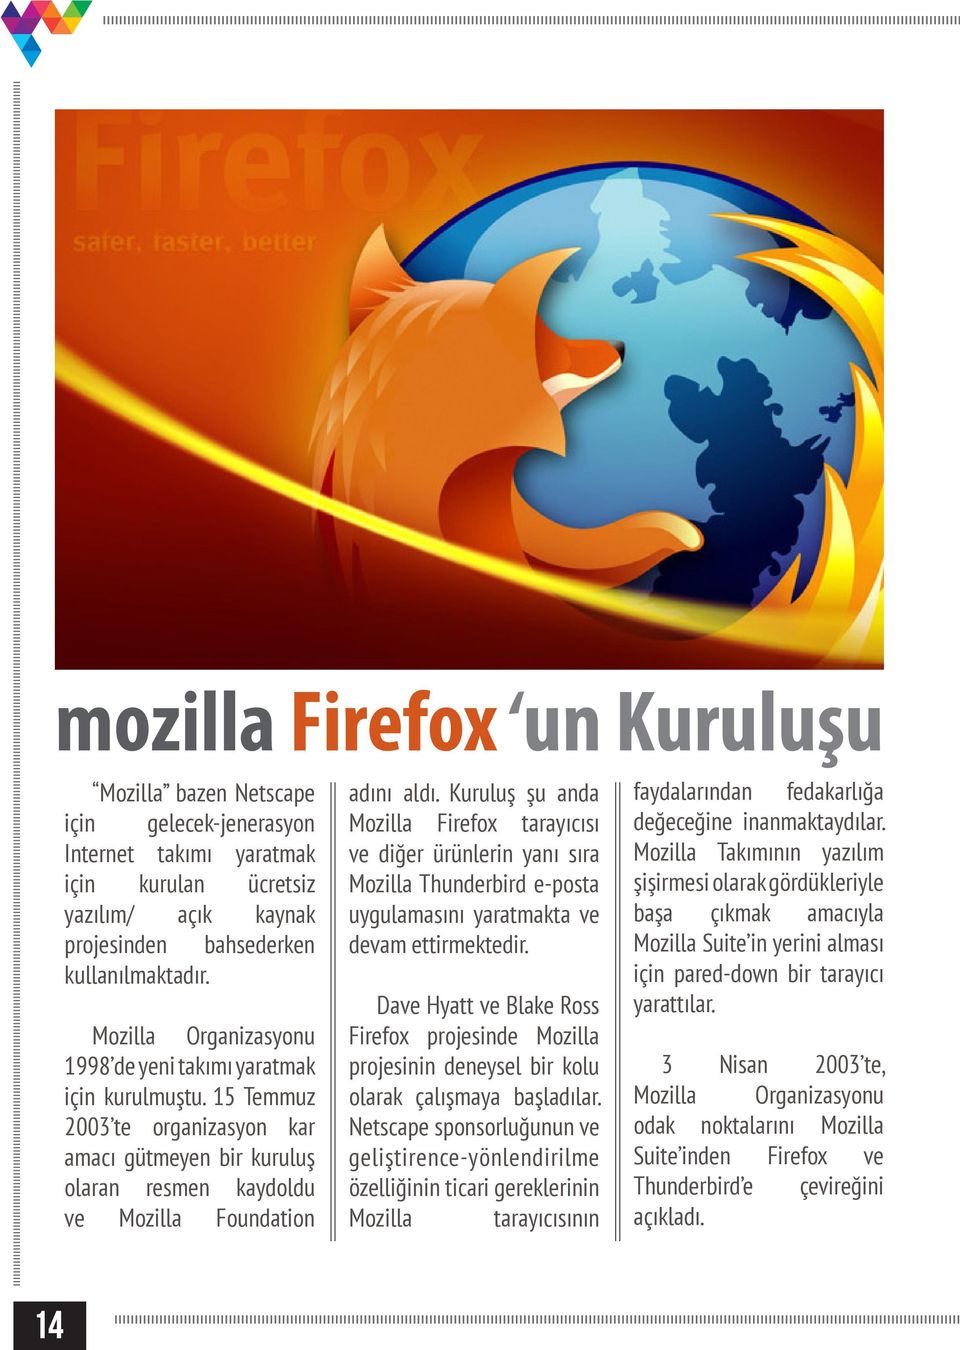 Kuruluş şu anda Mozilla Firefox tarayıcısı ve diğer ürünlerin yanı sıra Mozilla Thunderbird e-posta uygulamasını yaratmakta ve devam ettirmektedir.